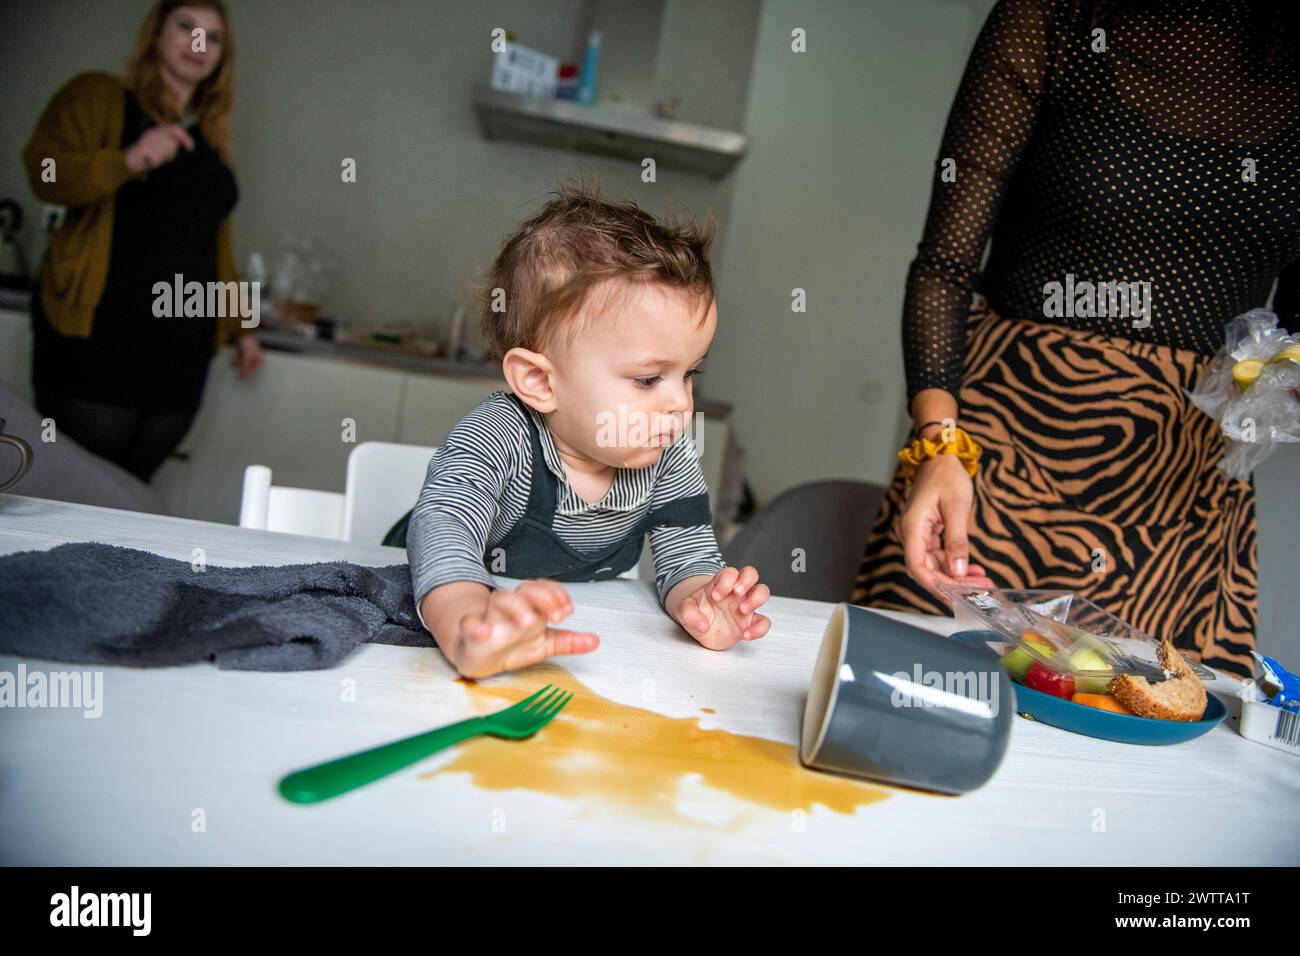 Ein neugieriges Kleinkind untersucht eine umgekippte Tasse auf einem Küchentisch, während Erwachsene zusehen. Stockfoto